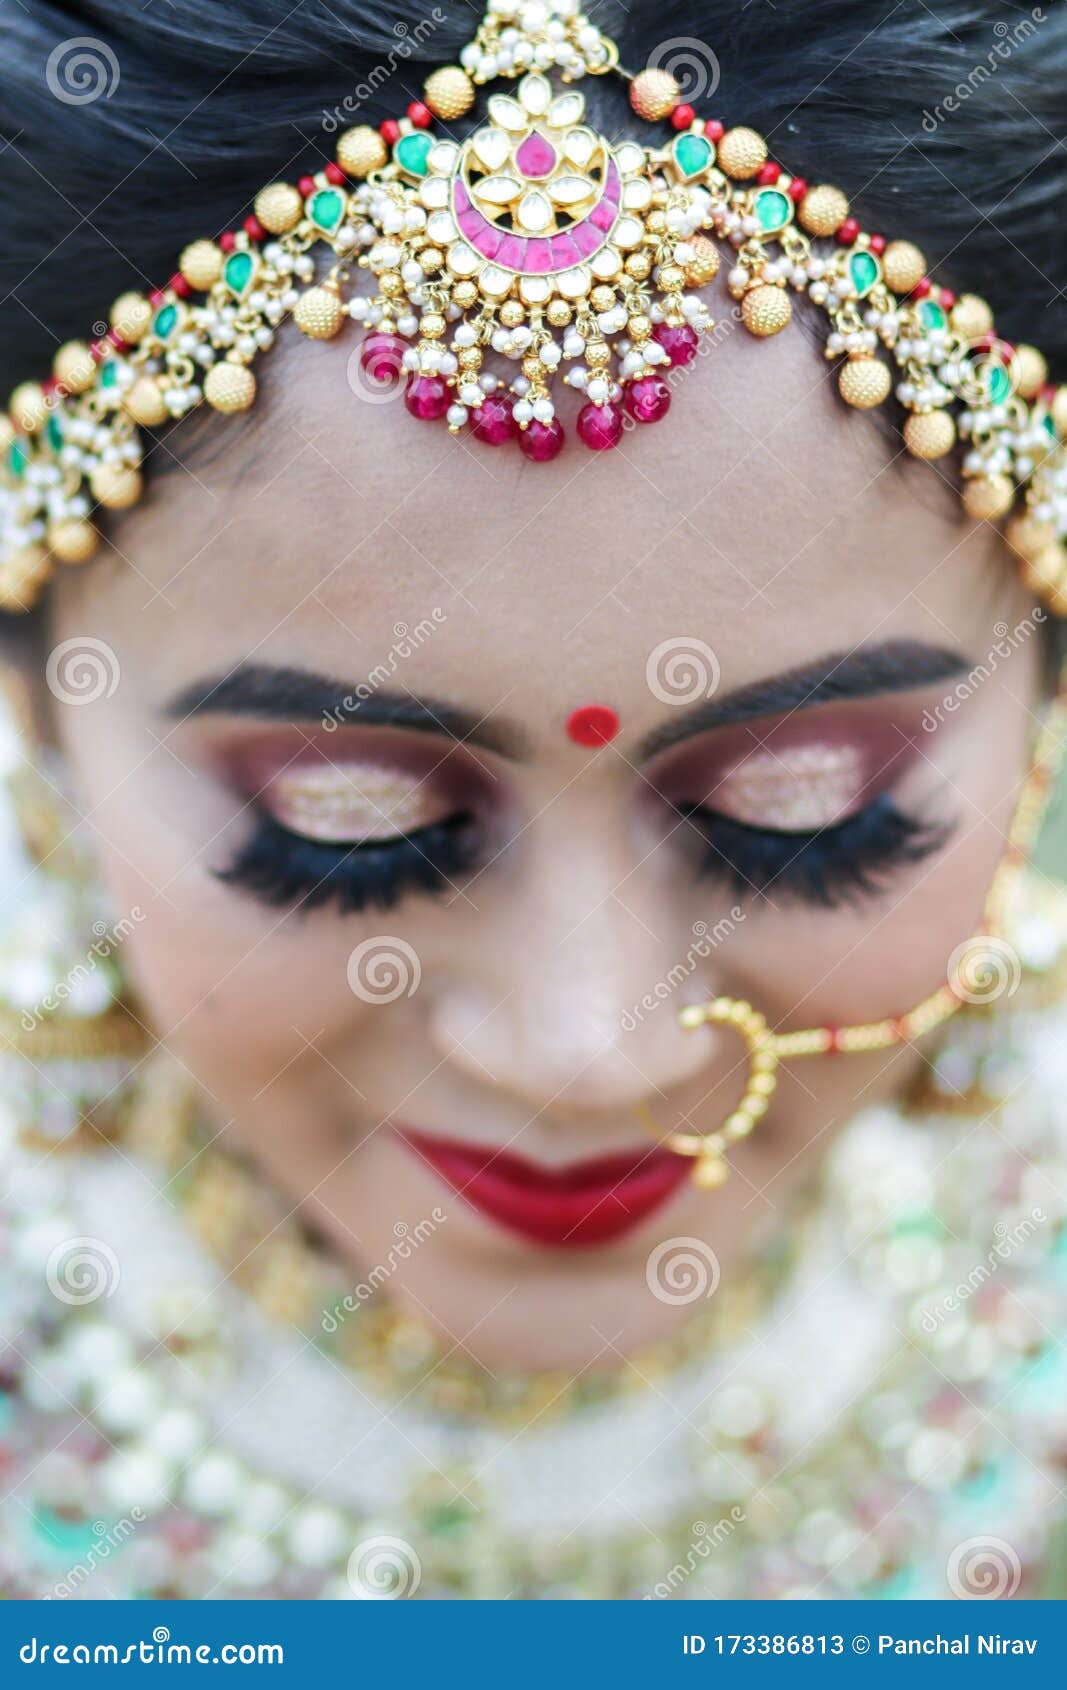 印度女人的鼻饰 原来首饰真的不止耳环项链这么简单！_凤凰旅游